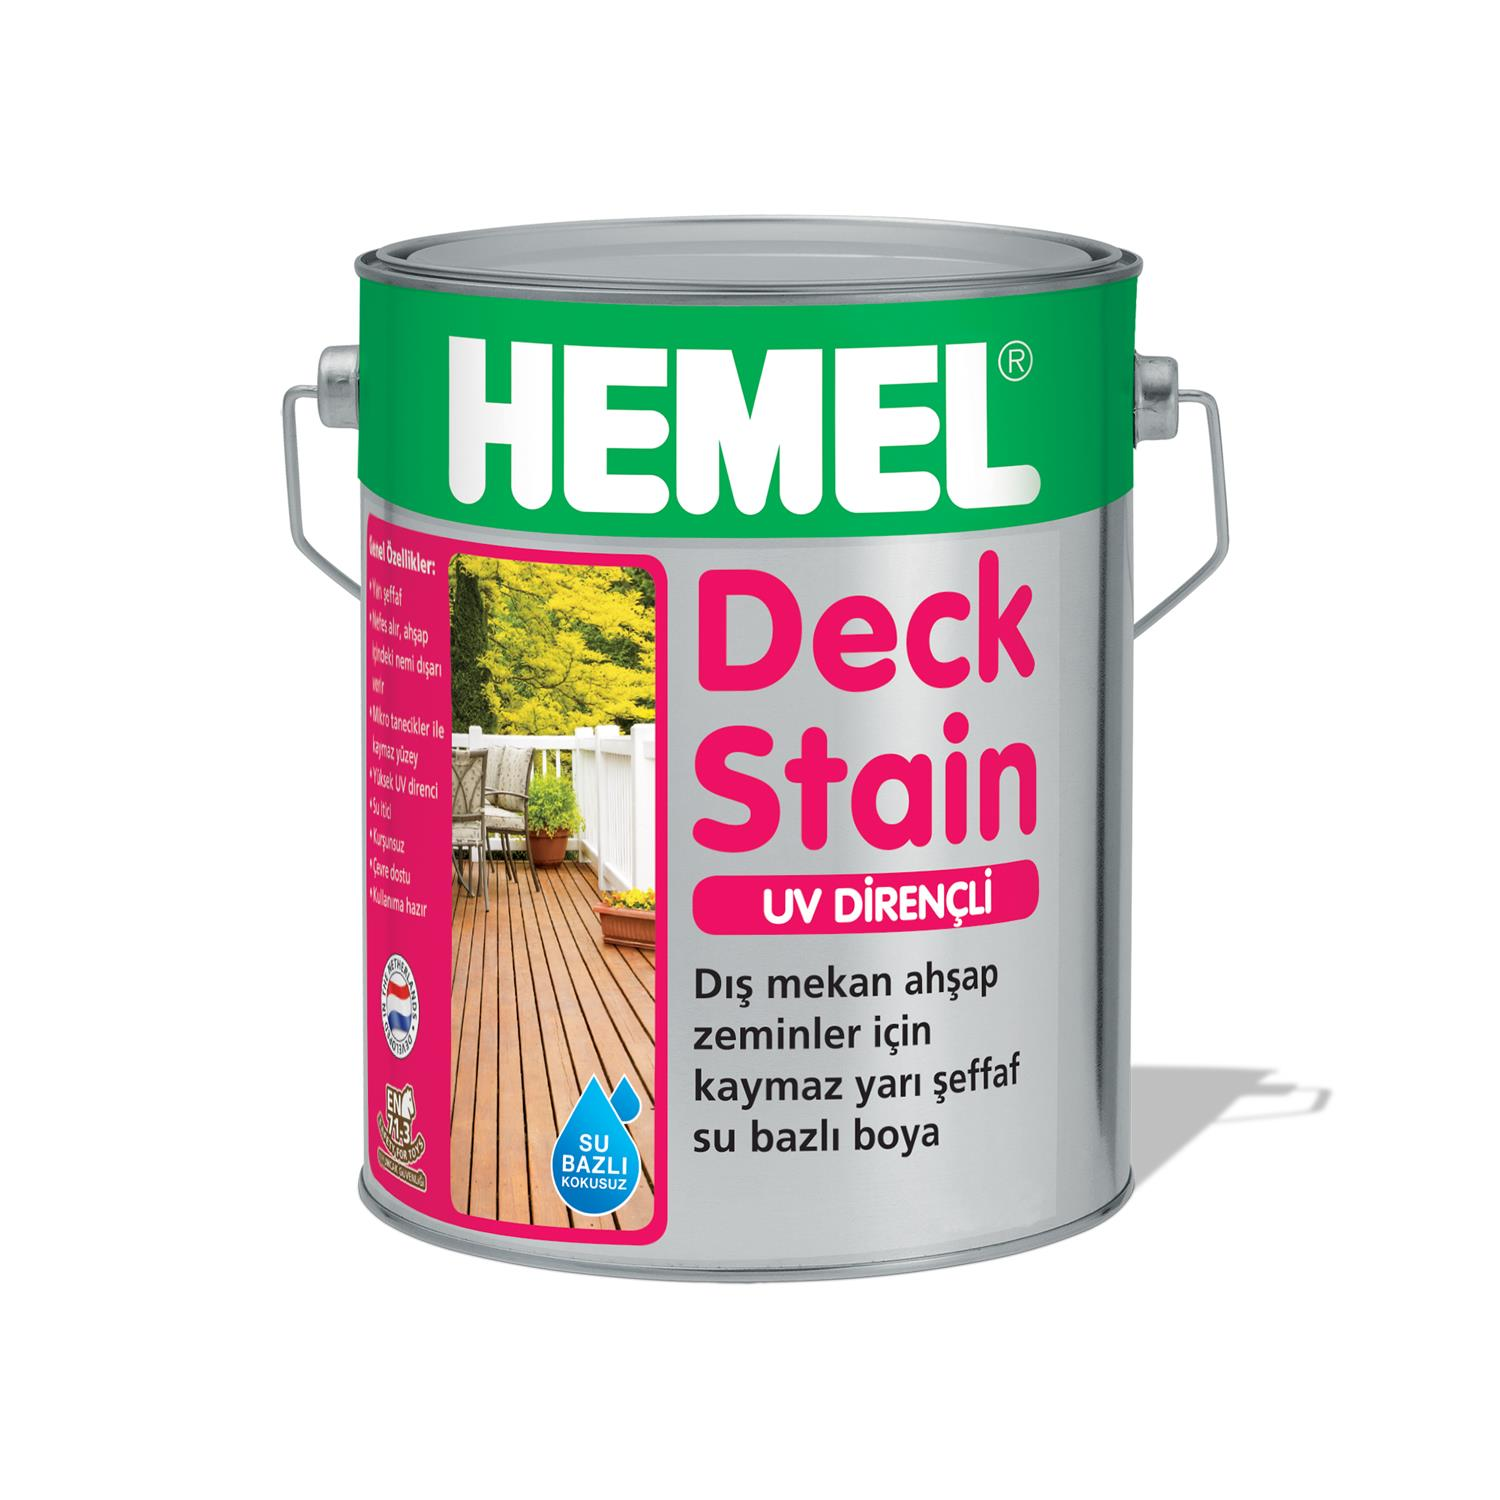 HEMEL Deck Stain - Kaydırmaz Yarı Şeffaf Boya 2,5 LT